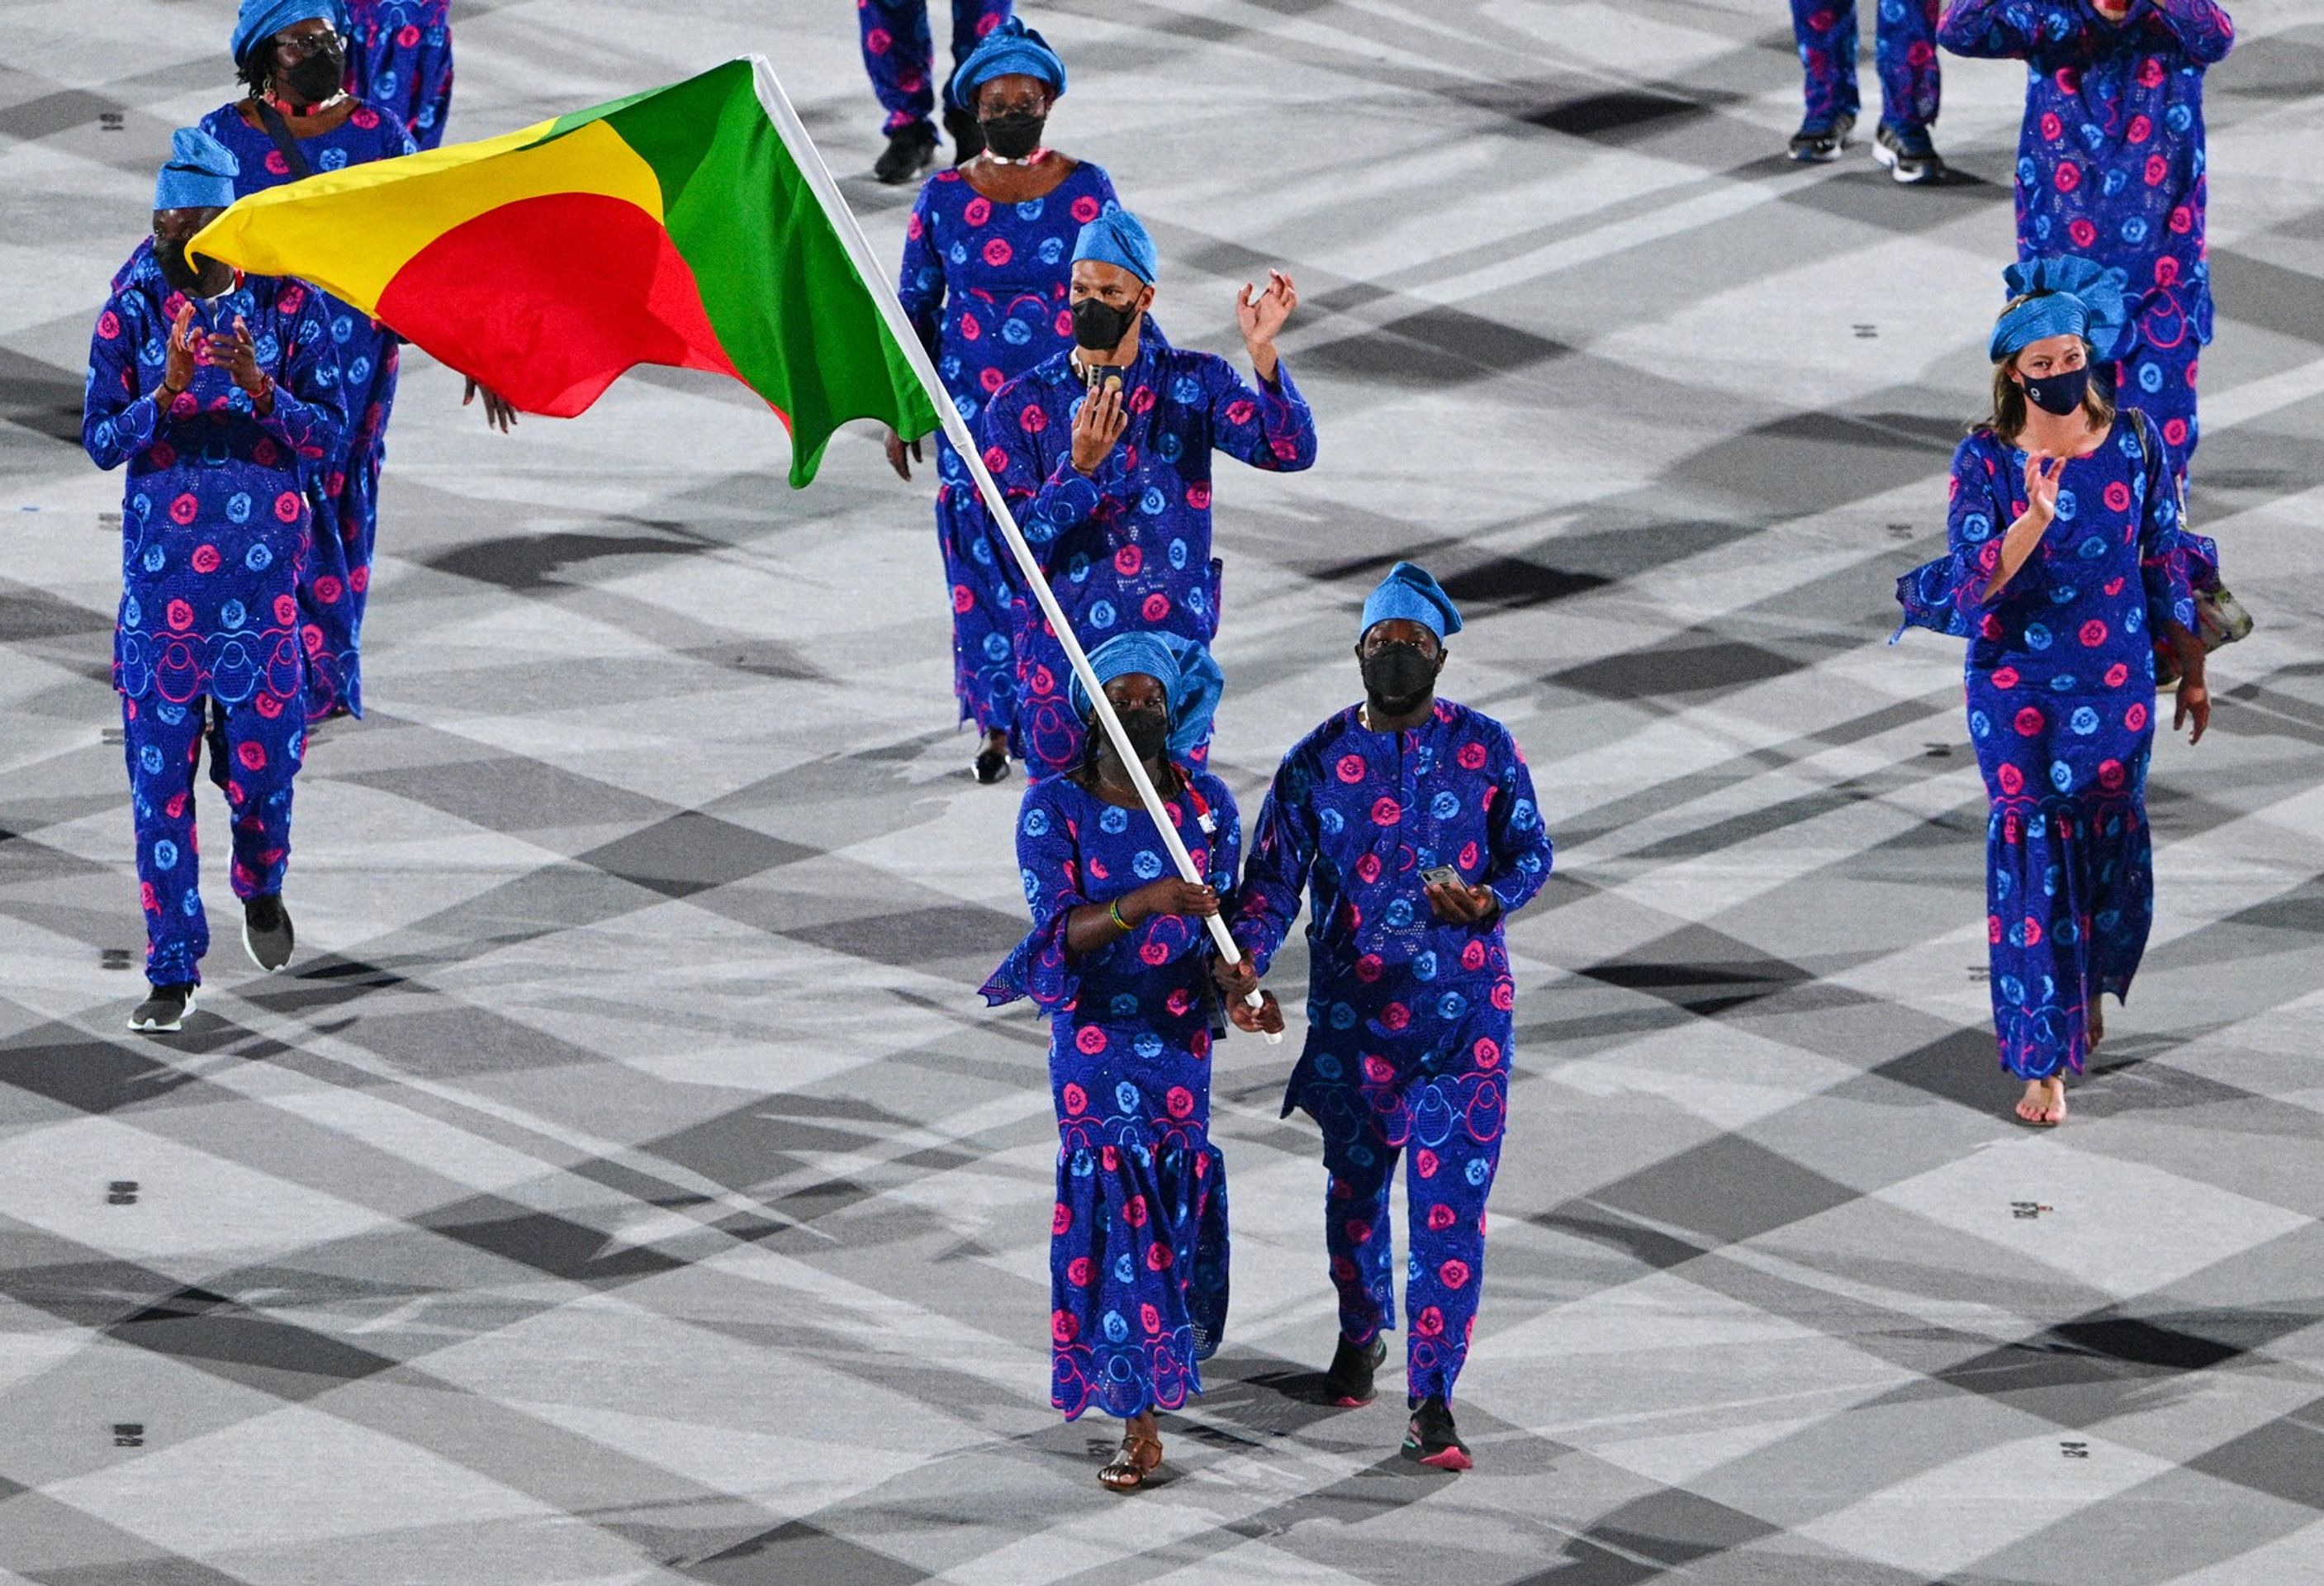 Sportovci z Beninu nastoupili ve šmoulovských čepicích - Galerie: Originální outfity při zahajovacím olympijském ceremoniálu (10/18)